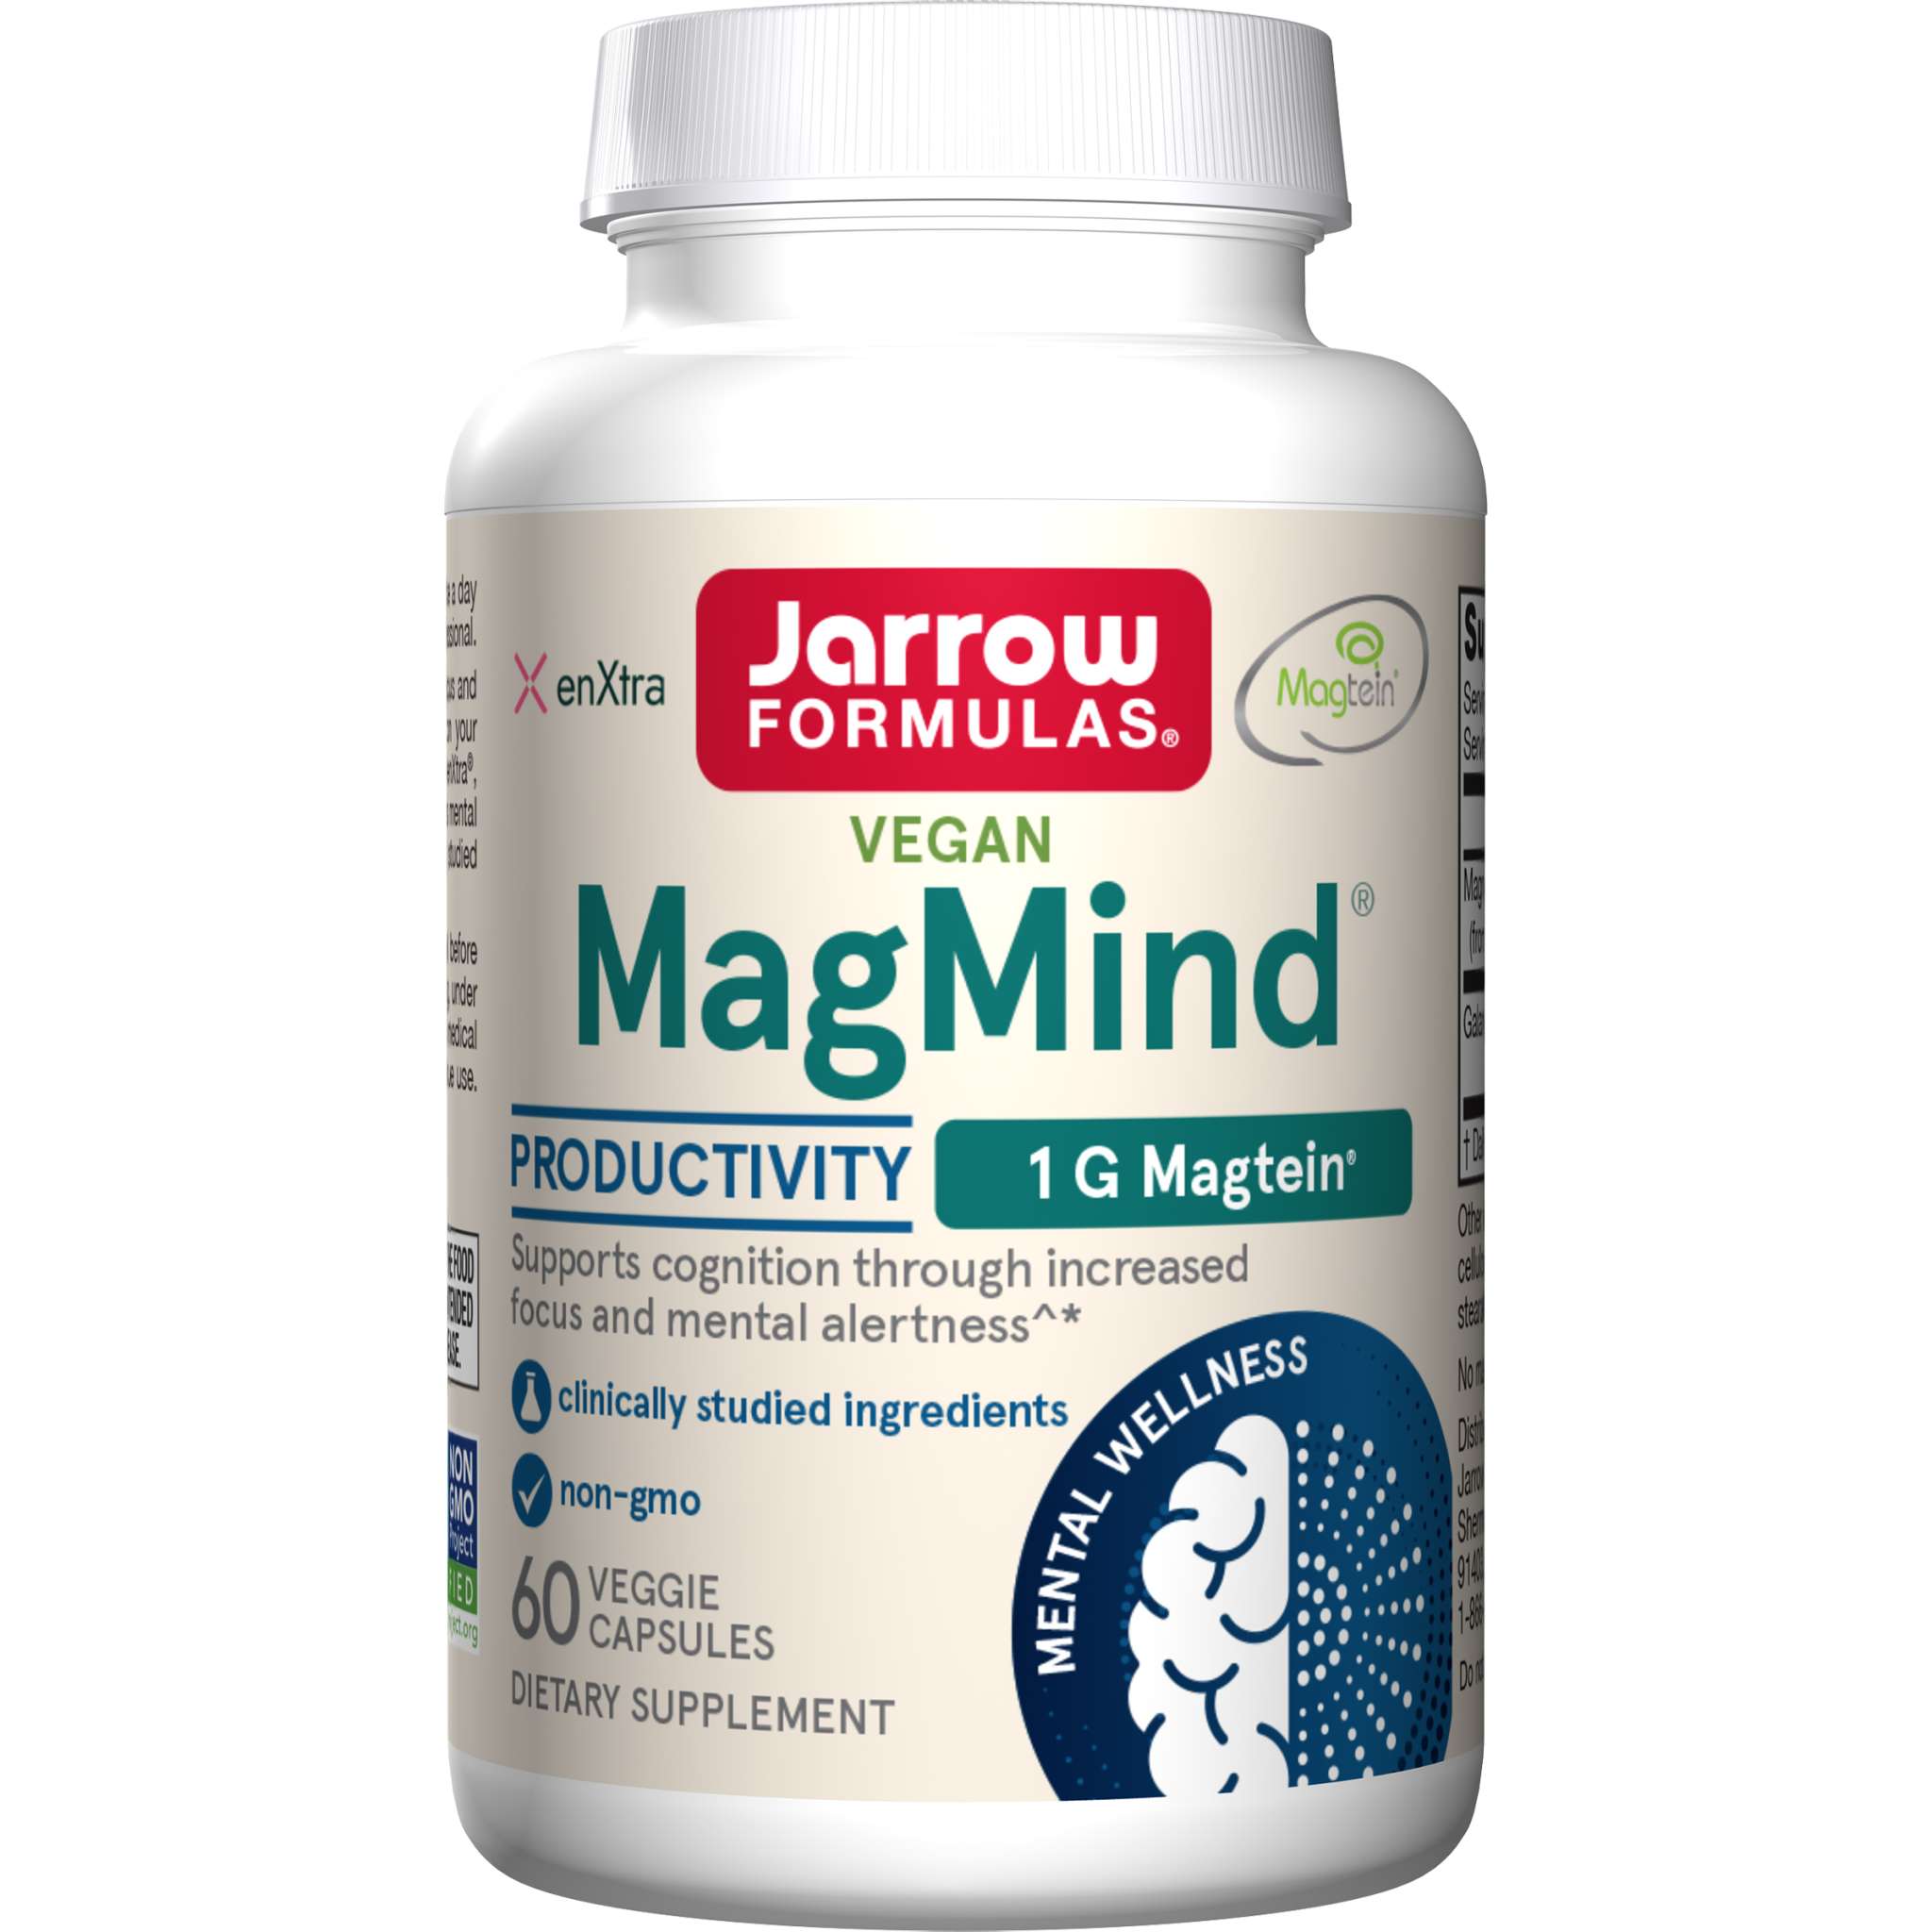 Jarrow Formulas - Magmind Productivity vCap